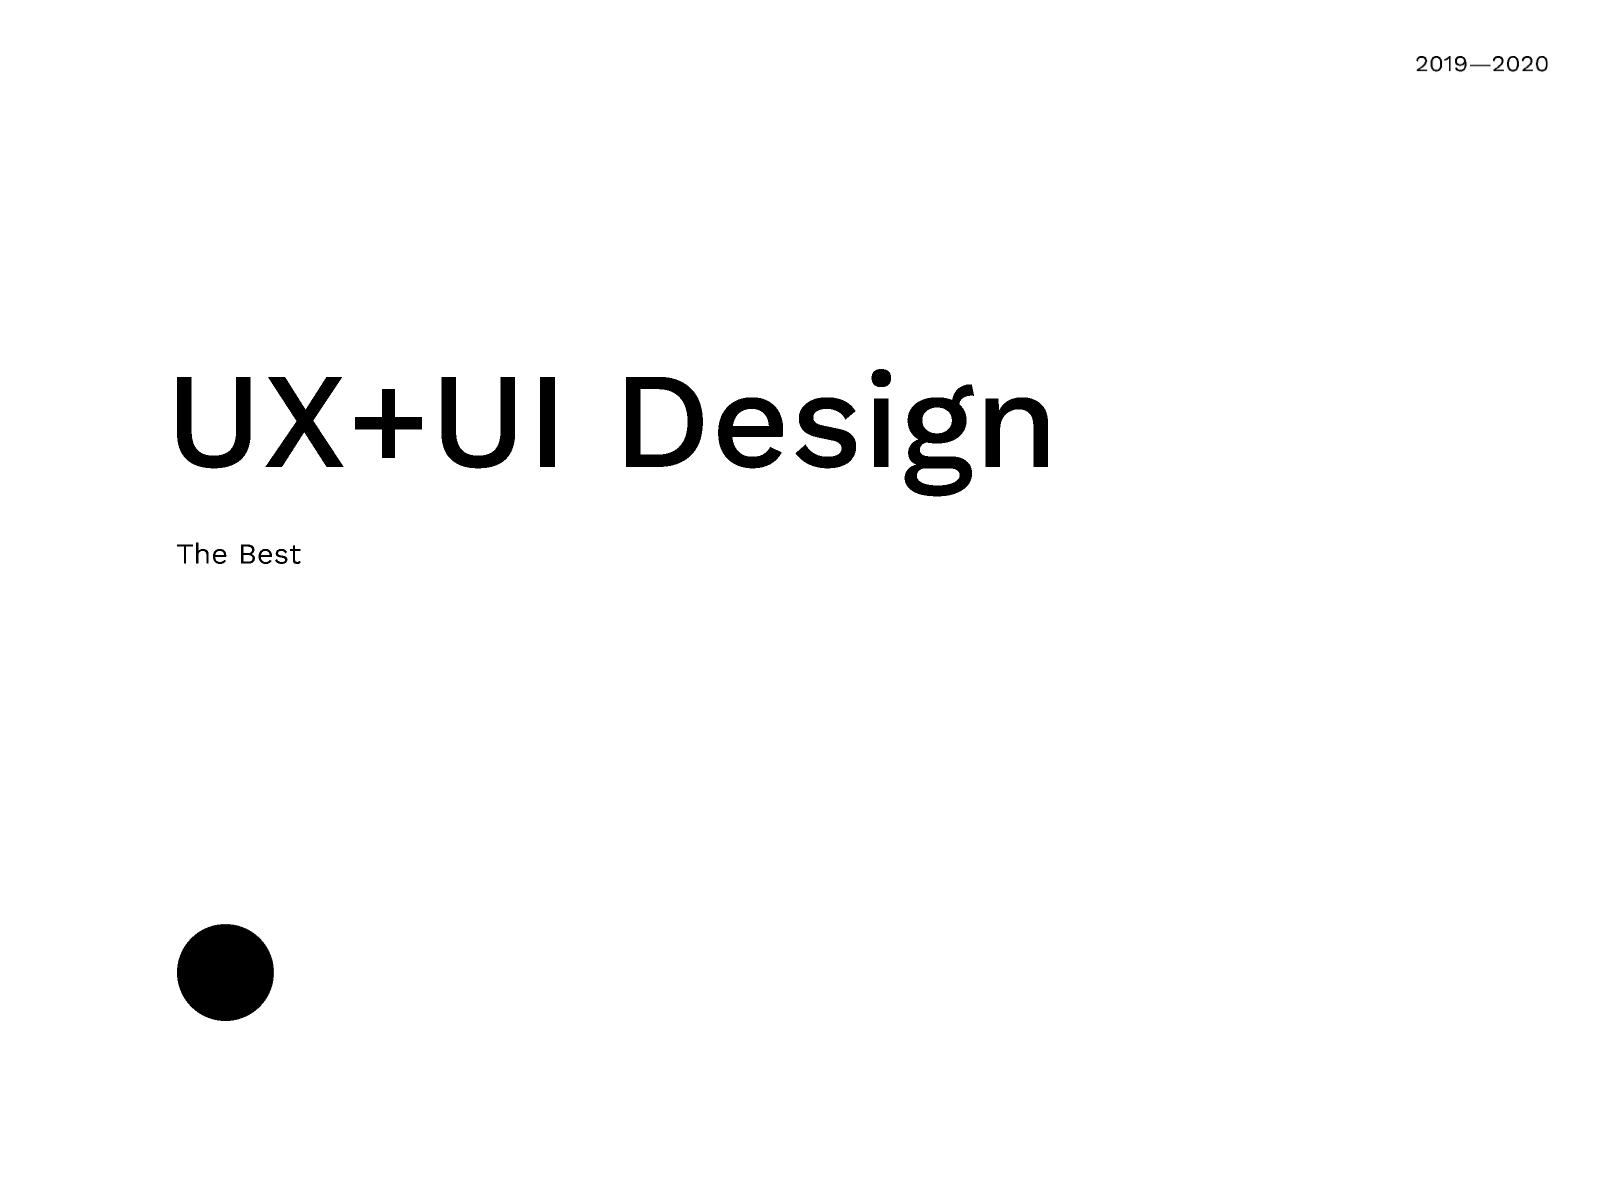 The Best UX+UI Design 2k20